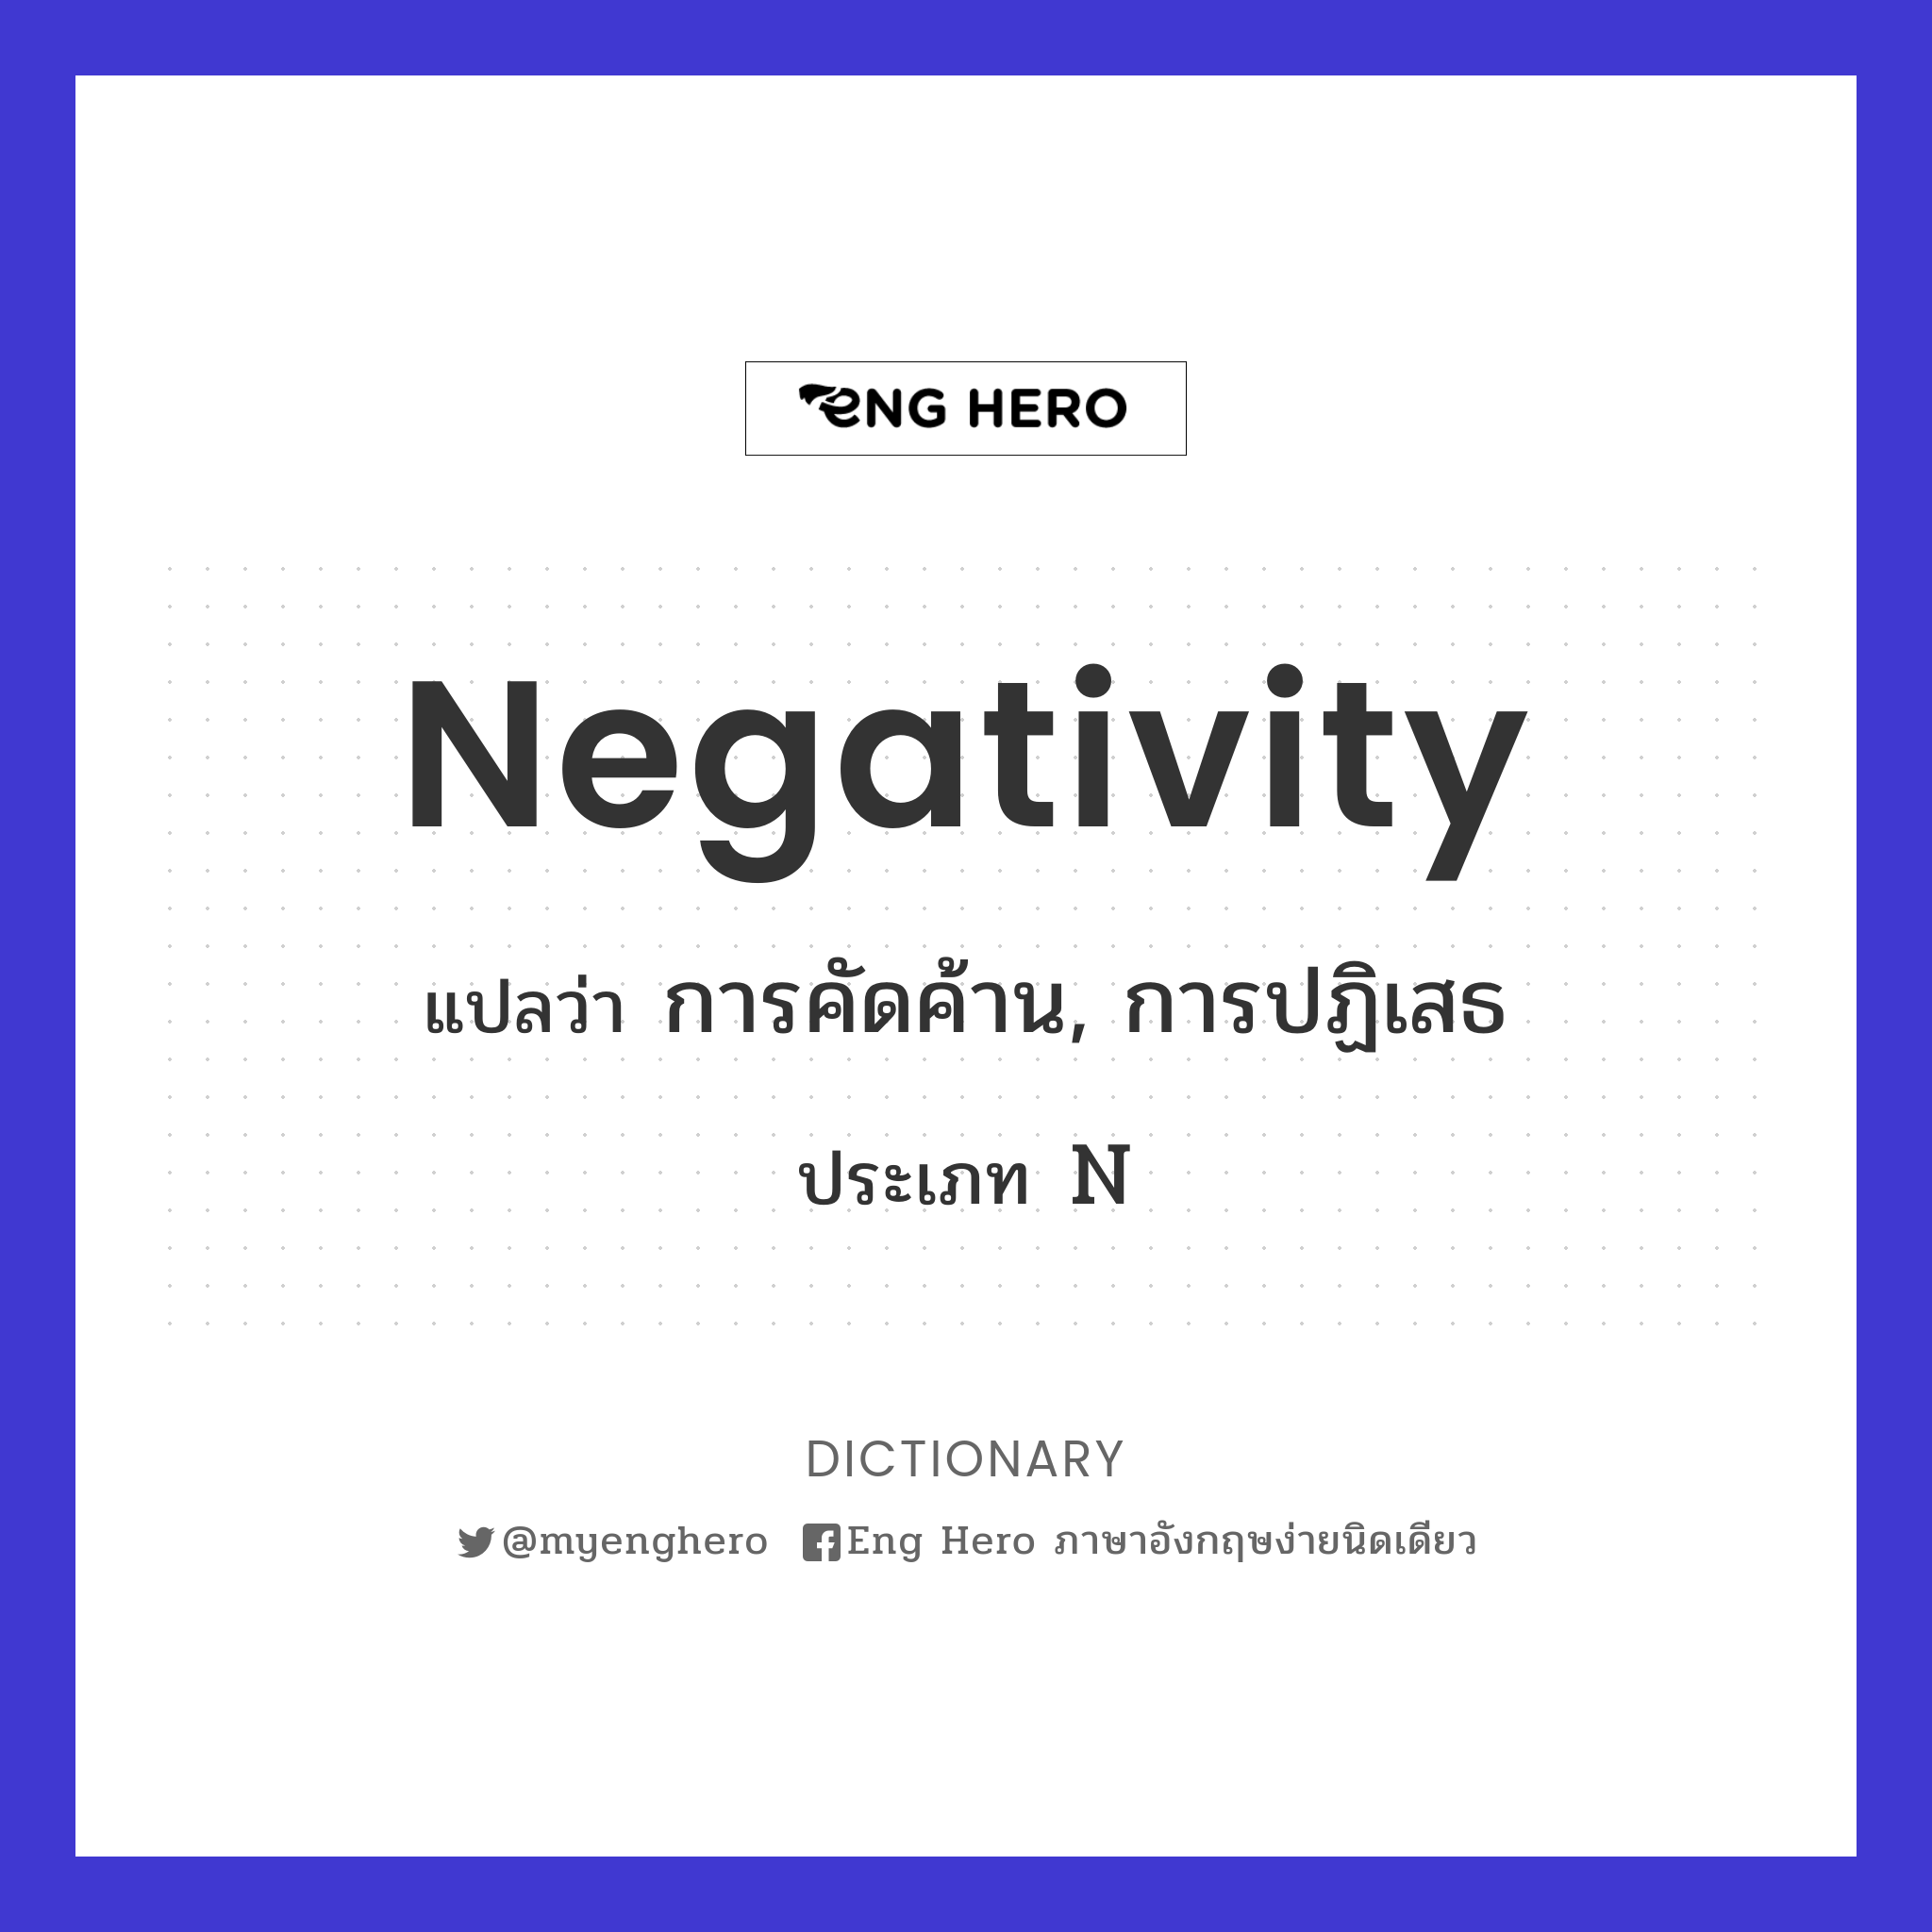 negativity